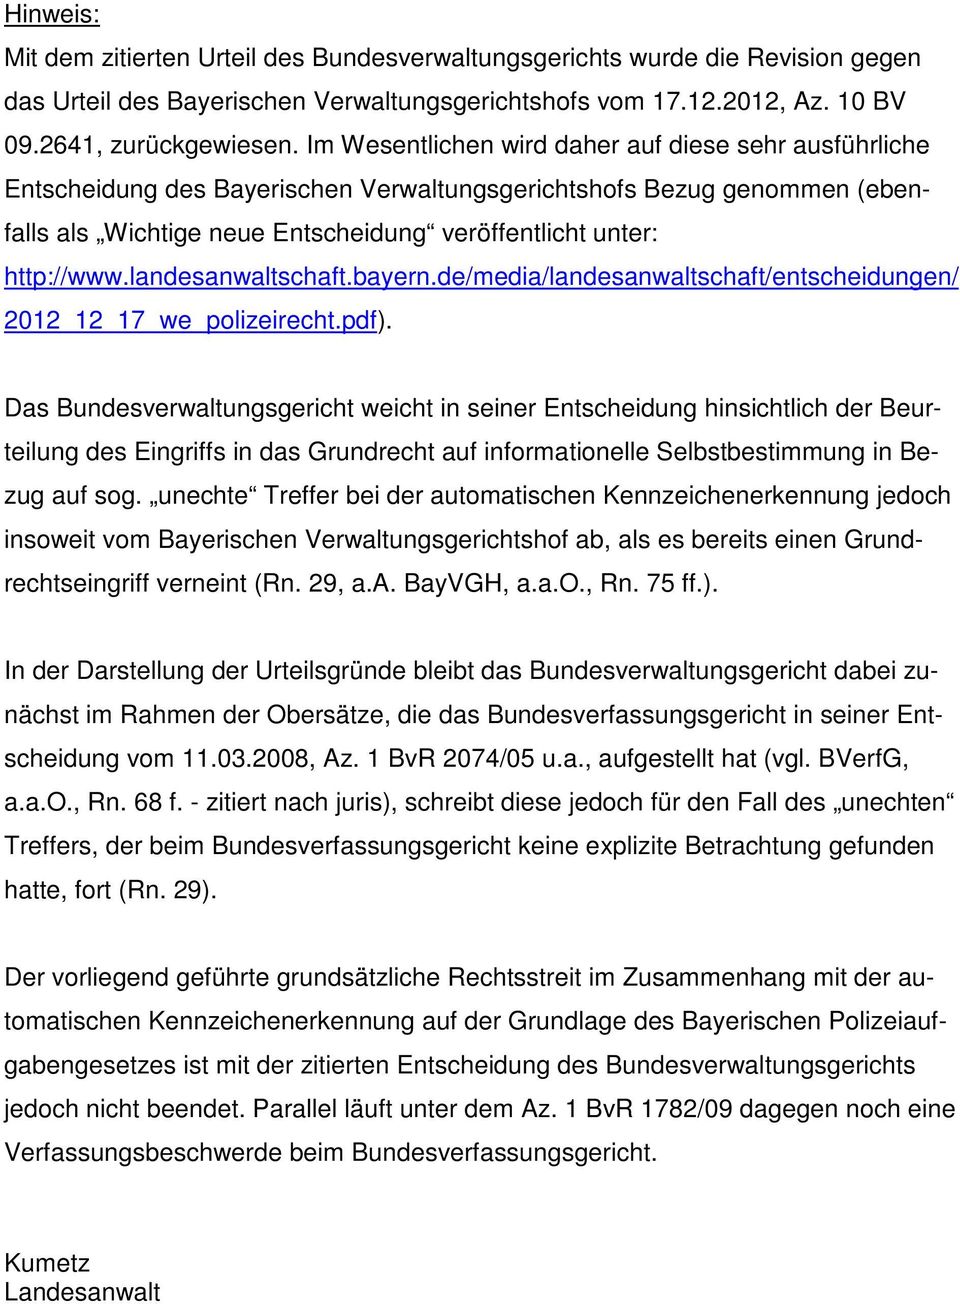 landesanwaltschaft.bayern.de/media/landesanwaltschaft/entscheidungen/ 2012_12_17_we_polizeirecht.pdf).